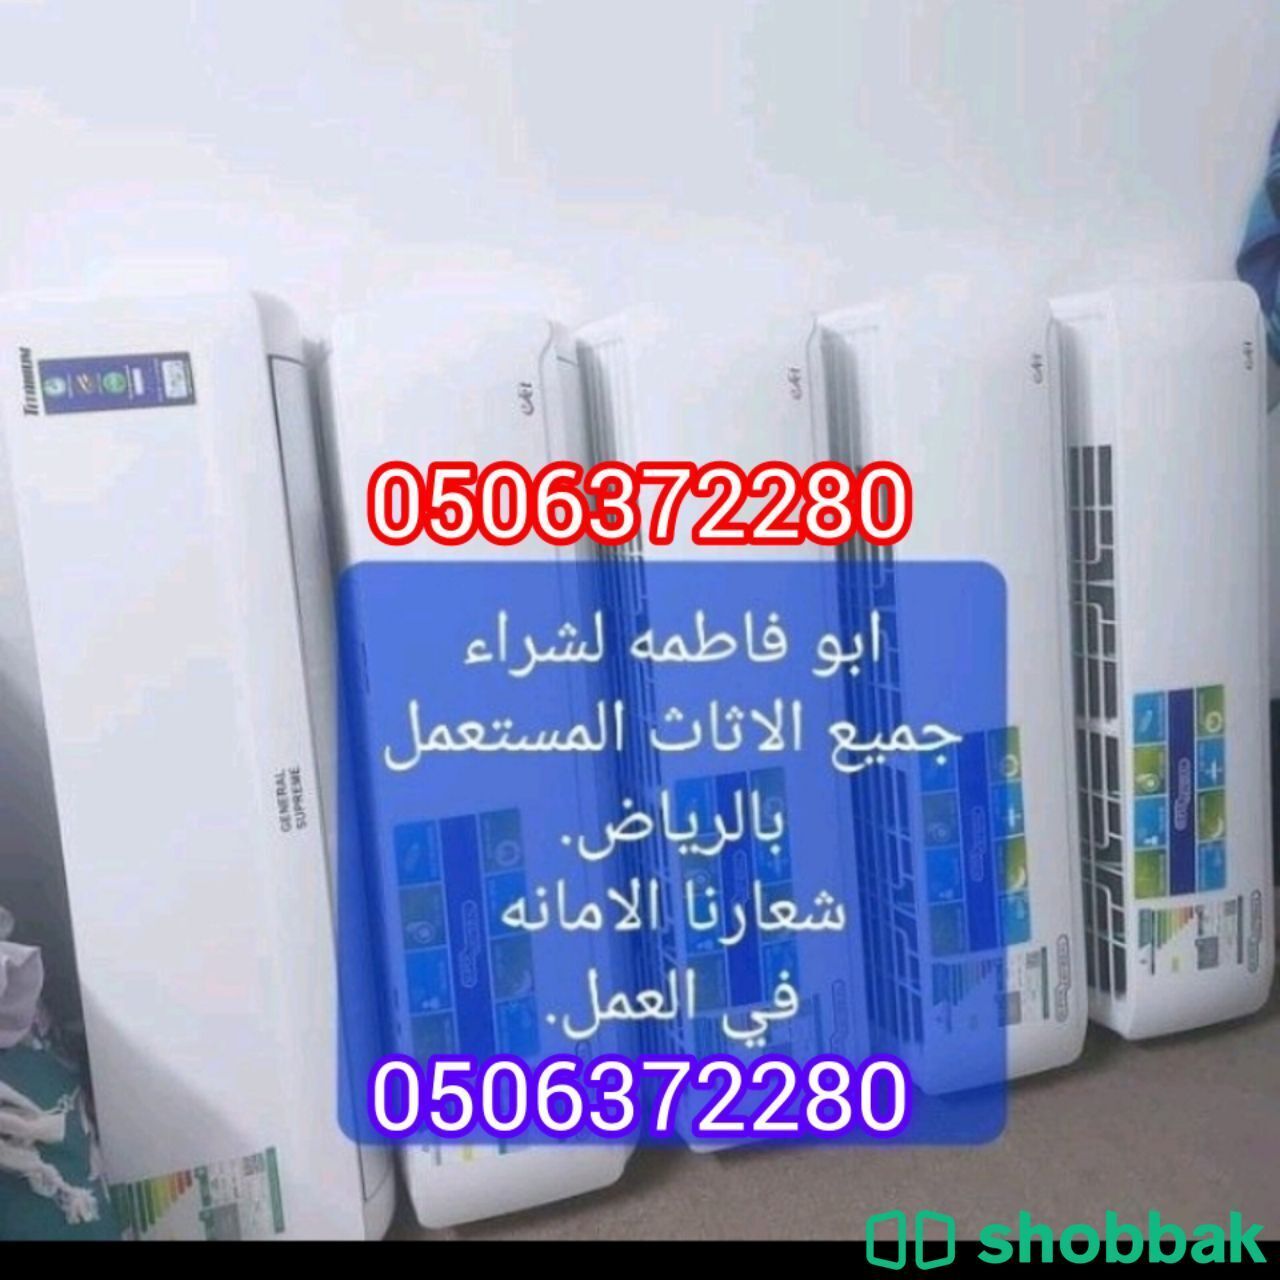 شراء اثاث مستعمل شرق الرياض 0506372280 حي الشهداء  Shobbak Saudi Arabia